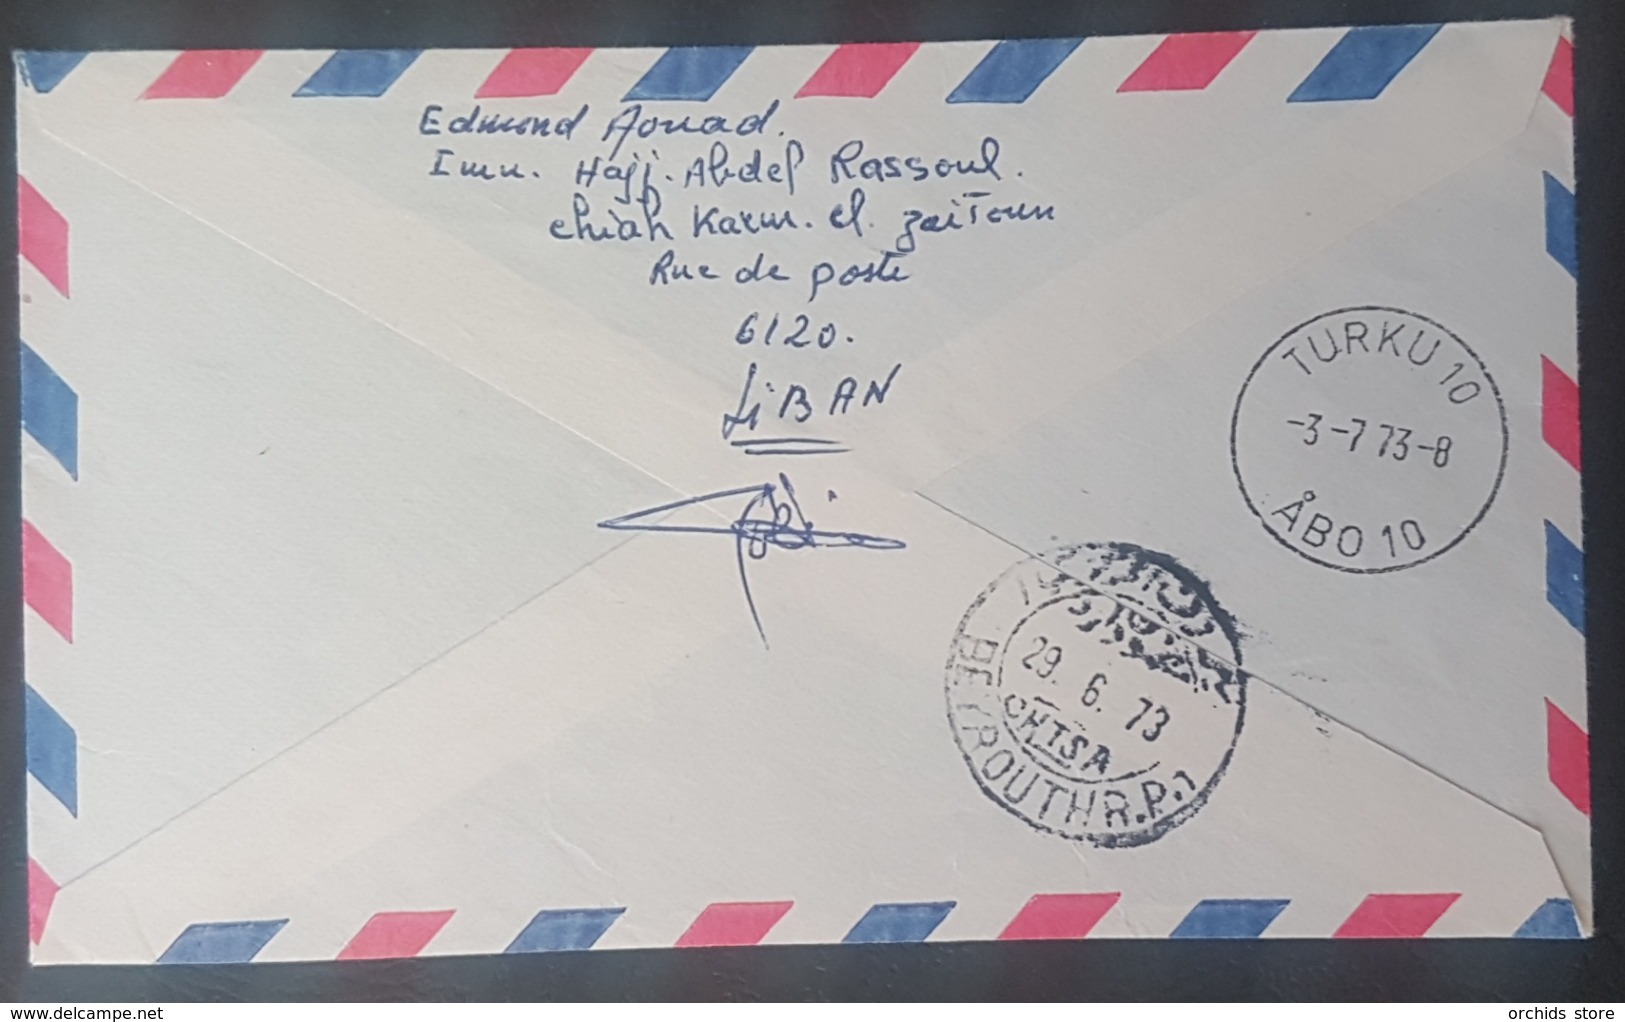 BL271 - Lebanon 1973 CHIAH Registered Airmail Cover - Libanon